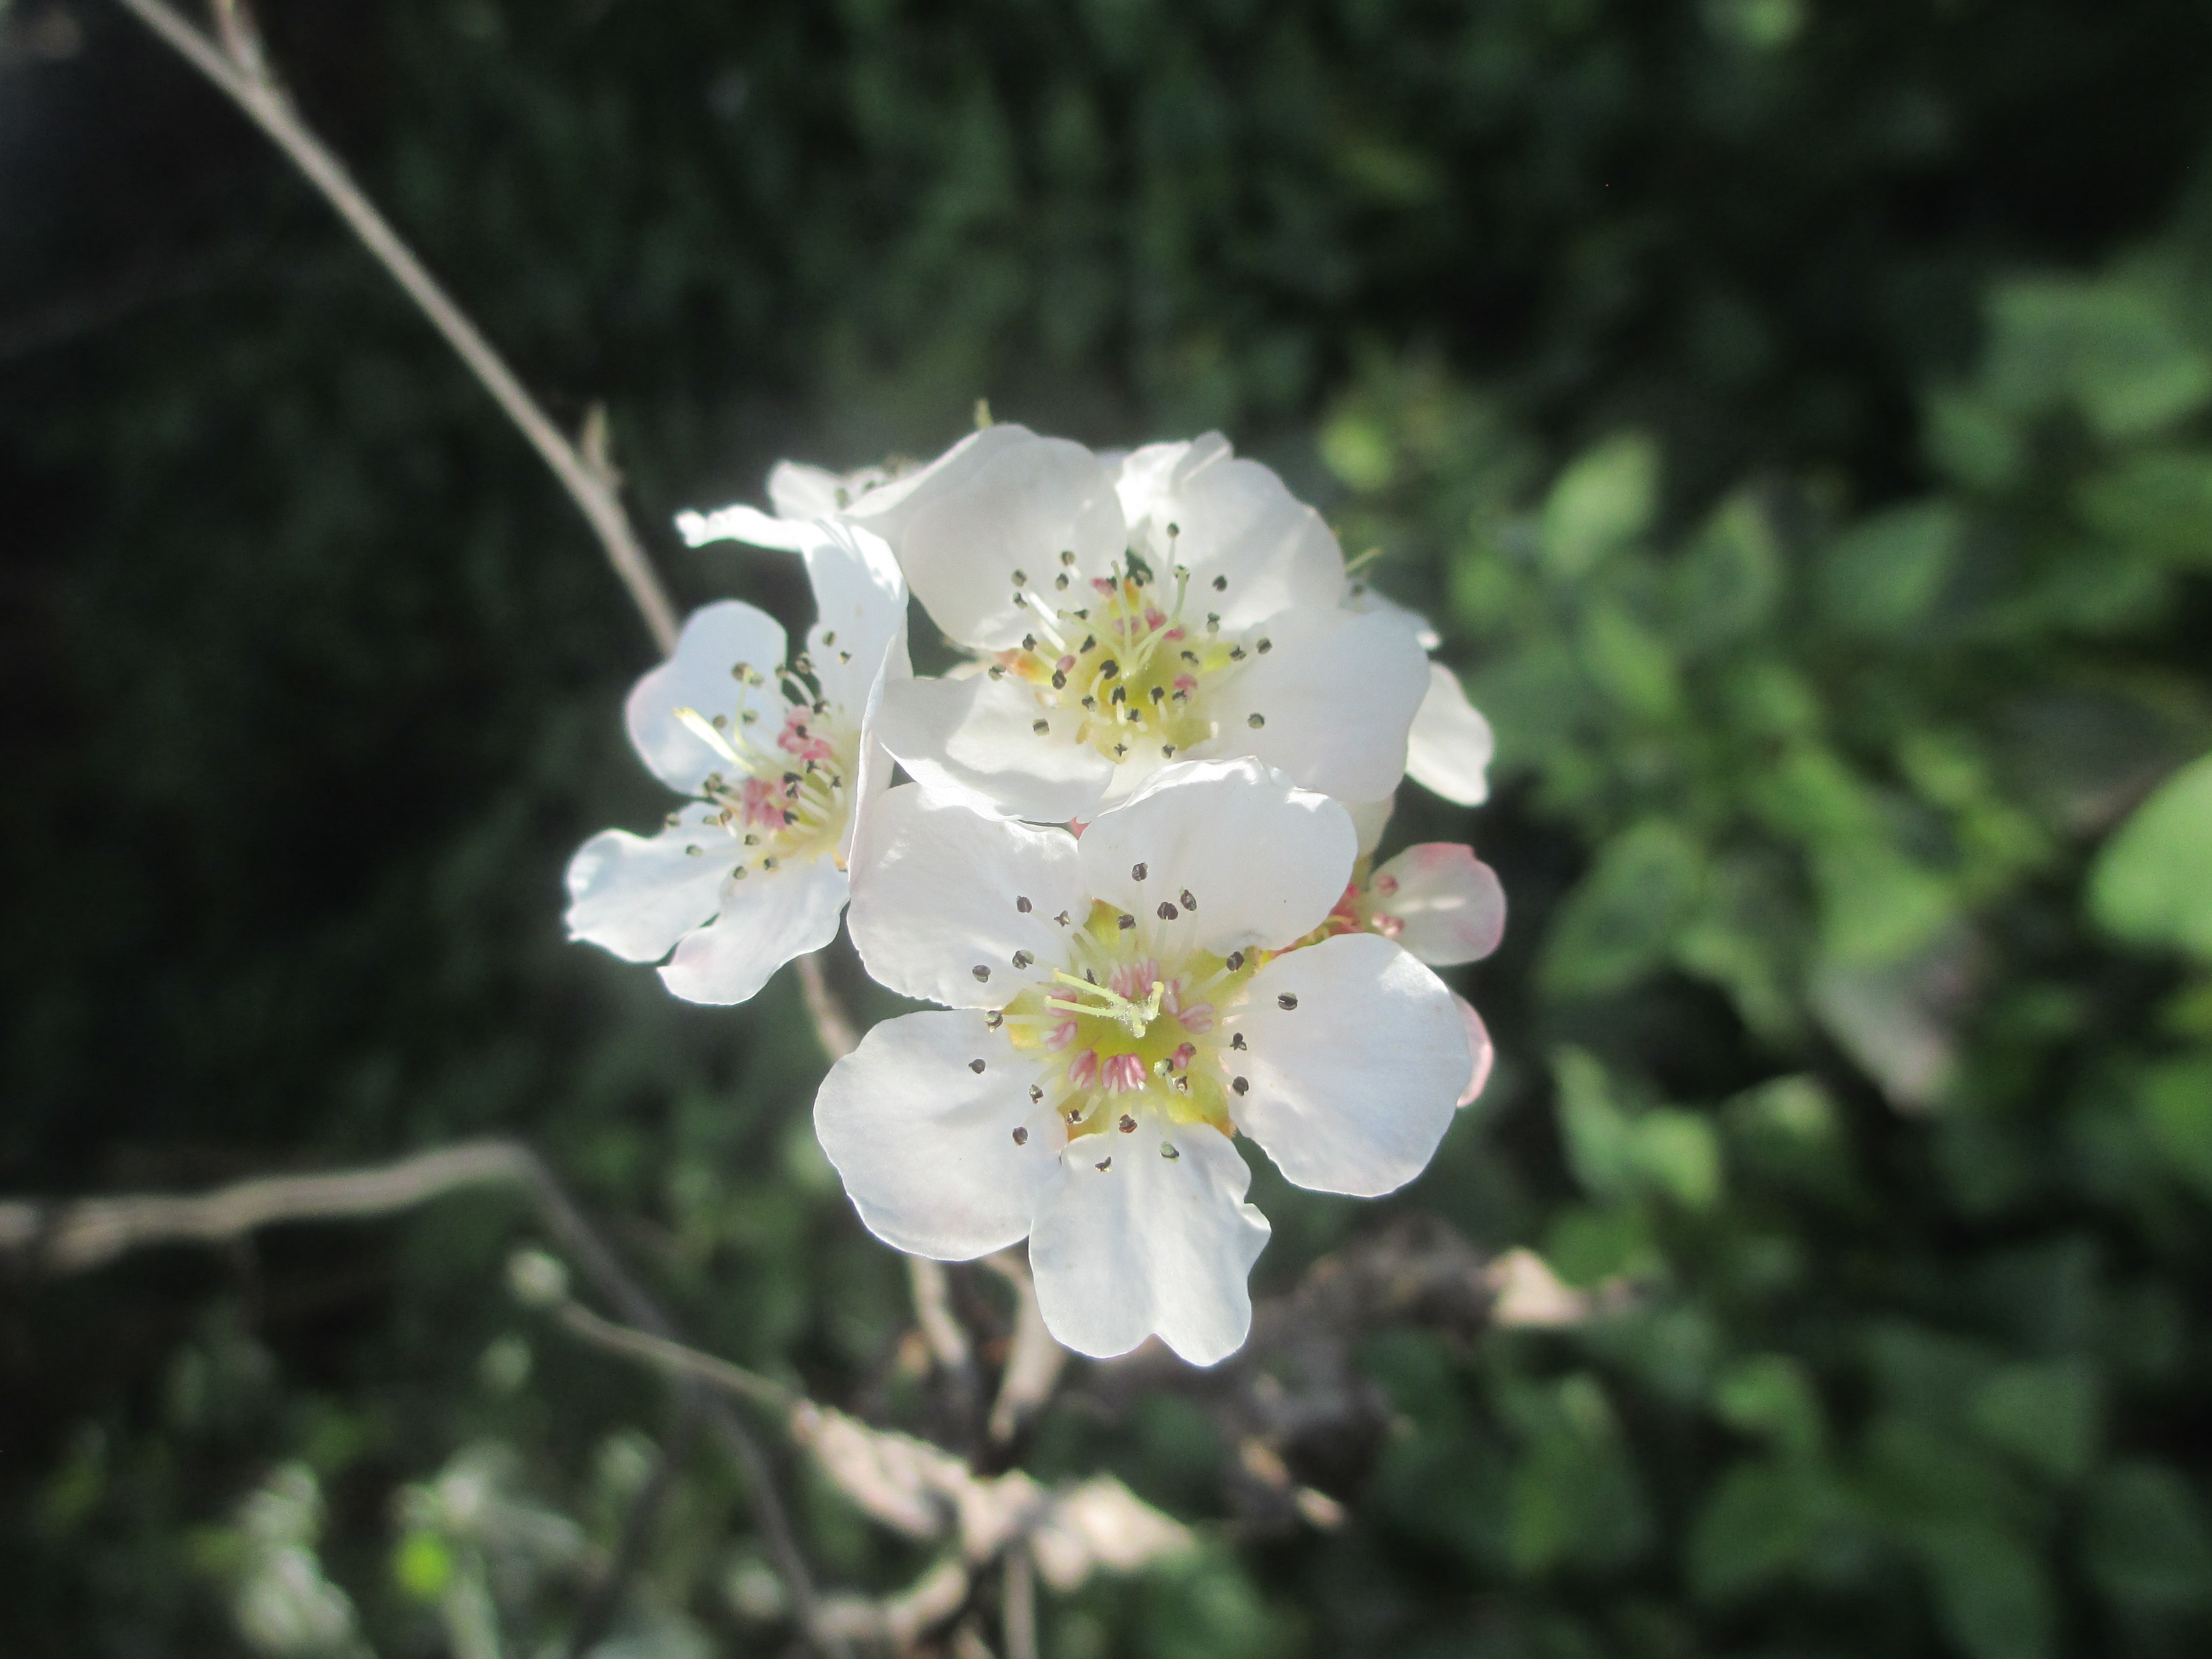 नेवारीमा 'पासी' भनिने नासपातीको फूल, जसको वैज्ञानिक नाम पाइरस पासिया हो। तस्बिर: लादोर्चे शेर्पा